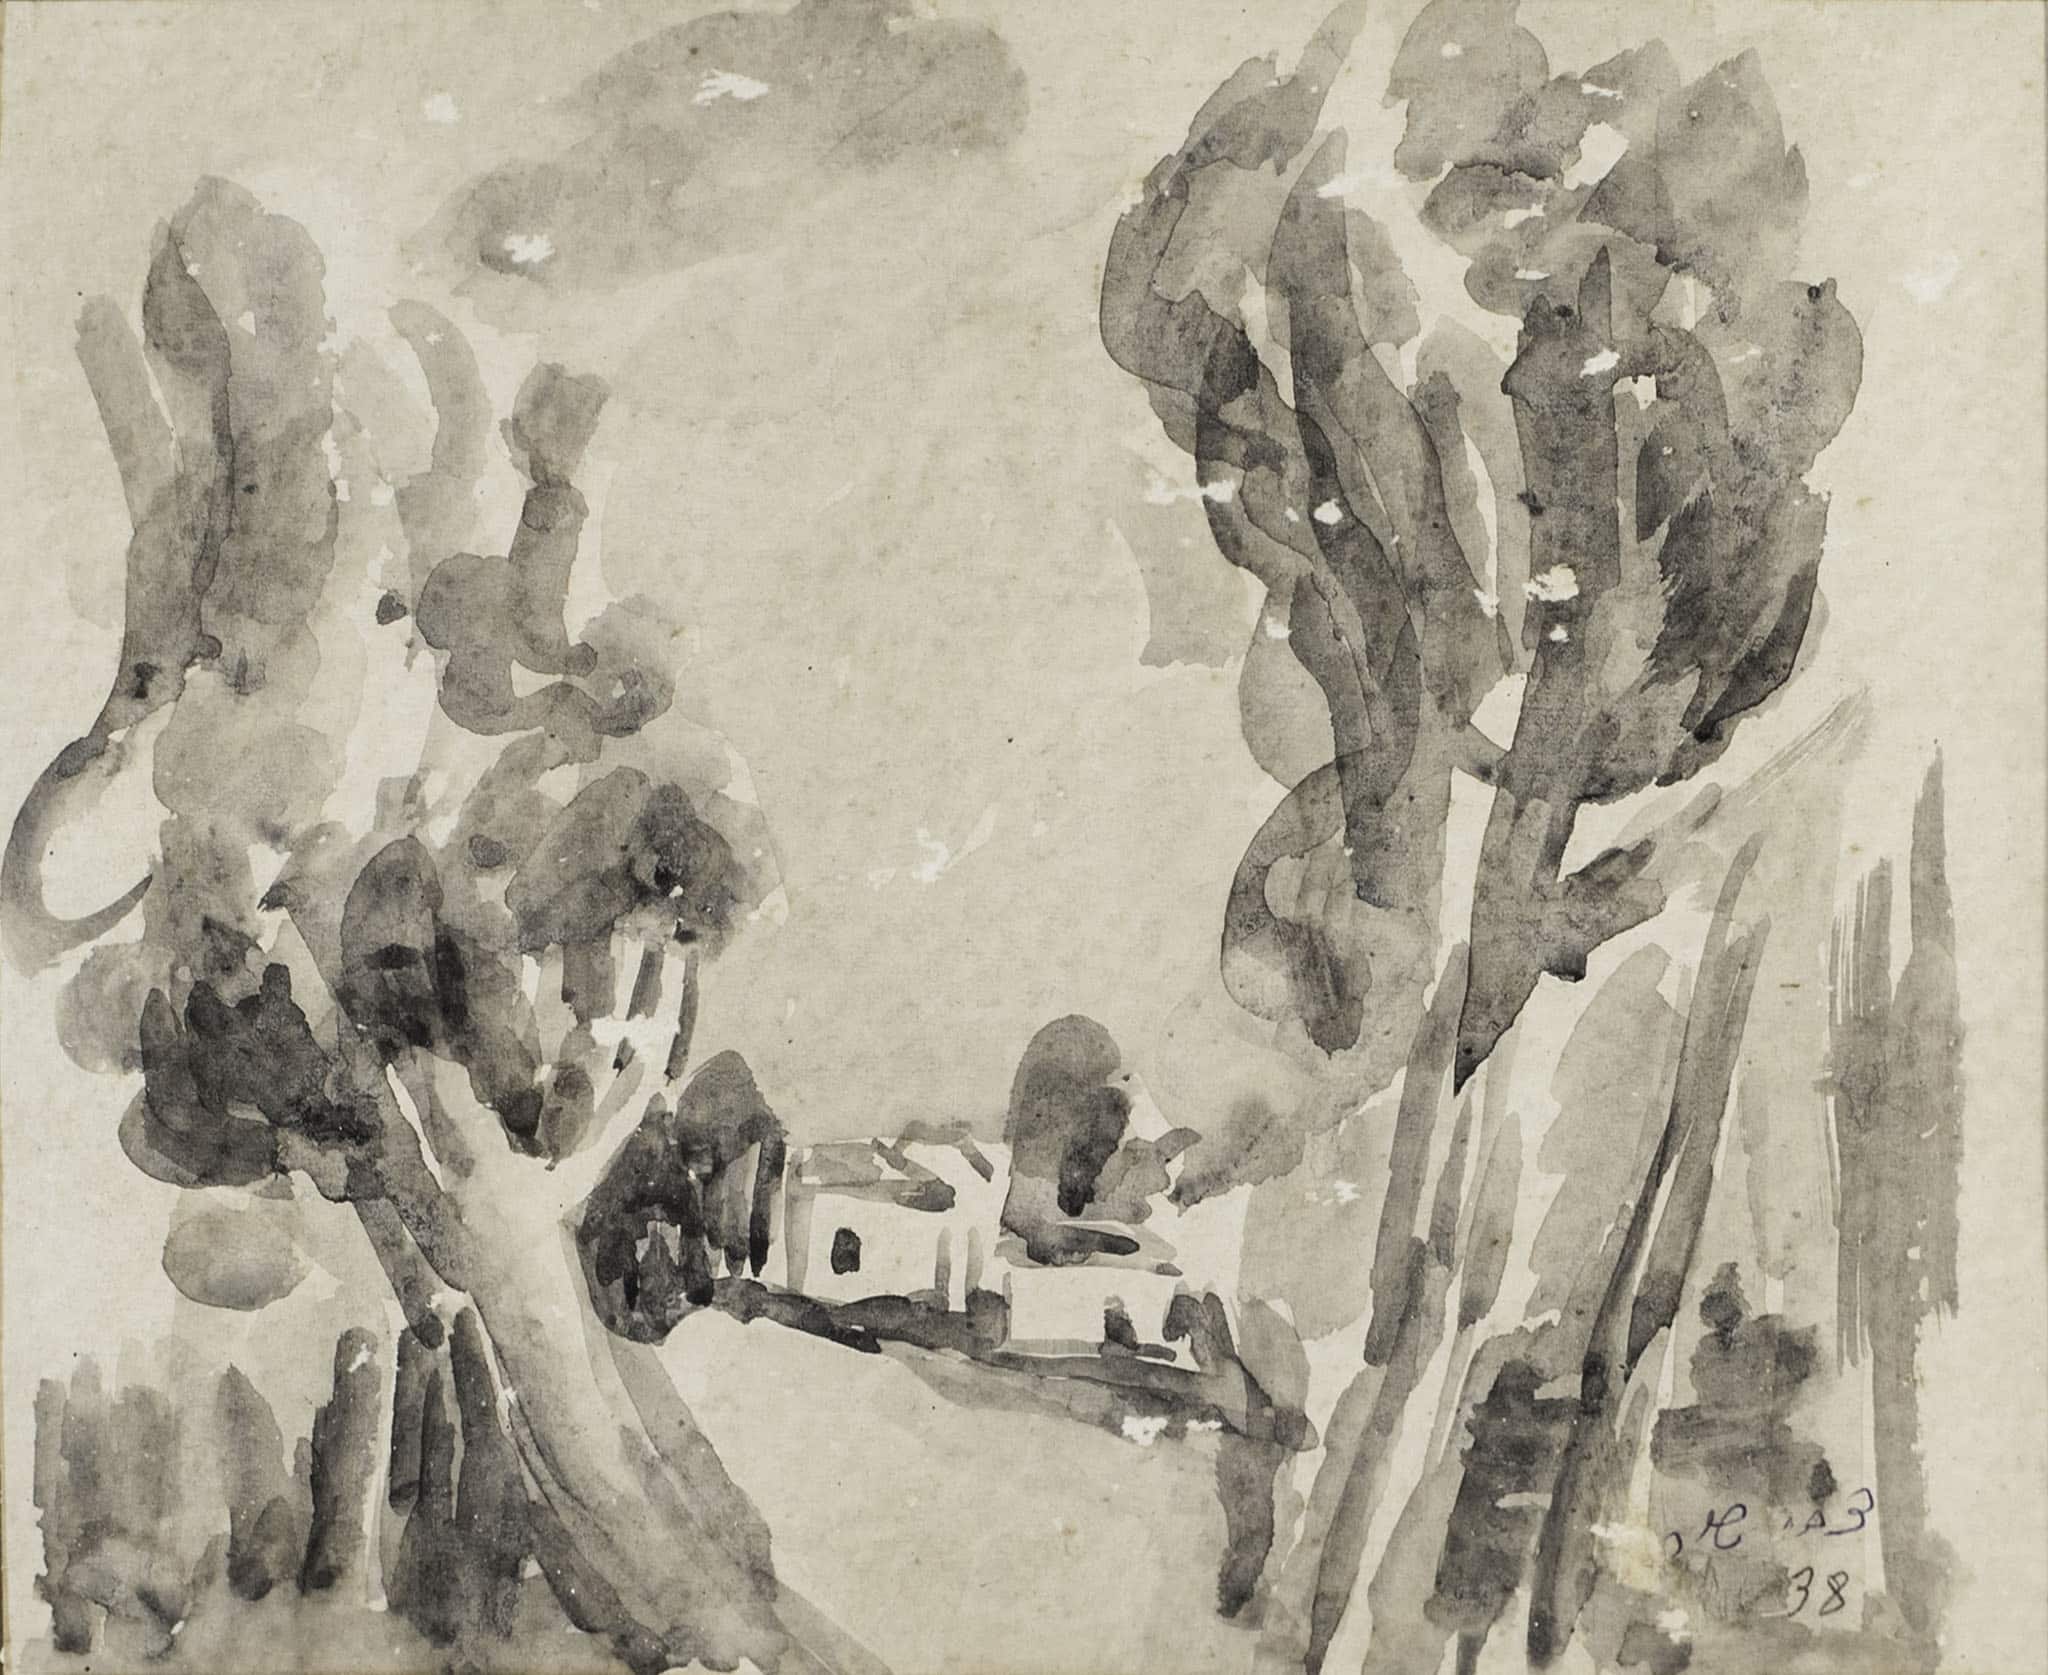 צבי שור, "פתח תקווה", 1938, אקוורל על נייר, 22x18 ס"מ